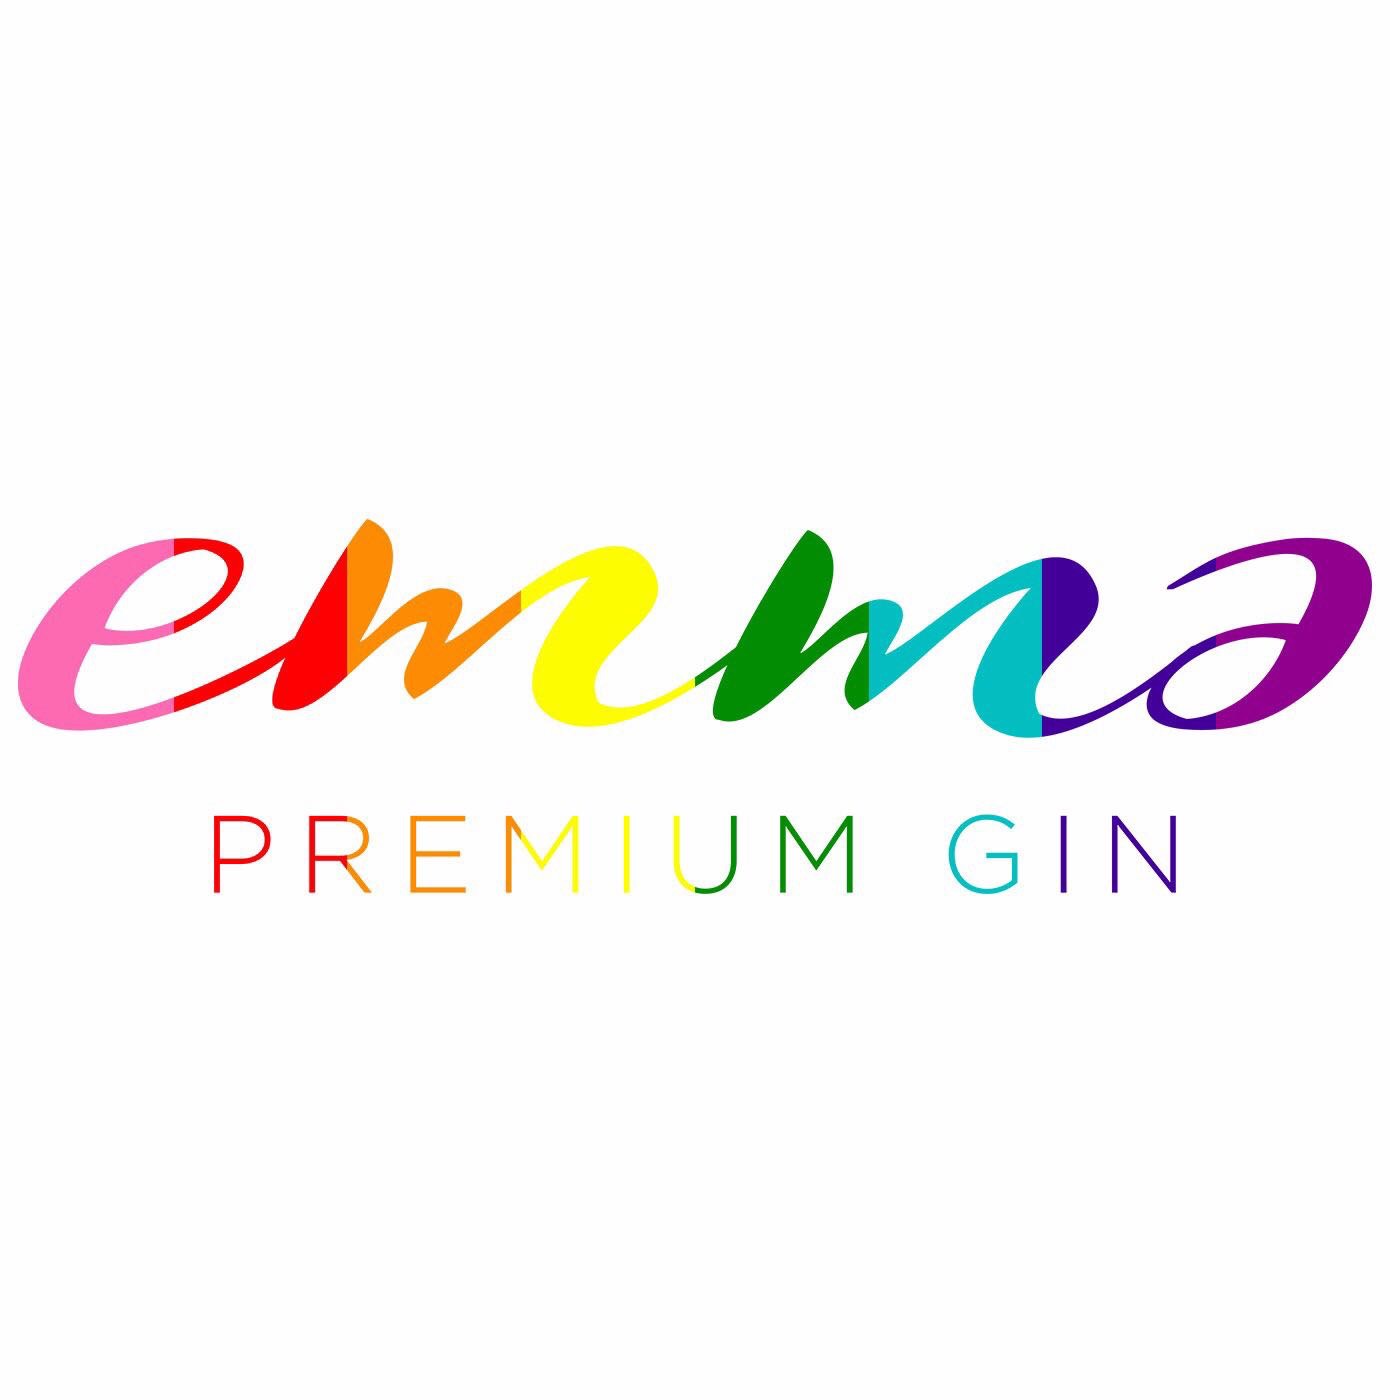 Emma Premium Gin en el World Pride 2017